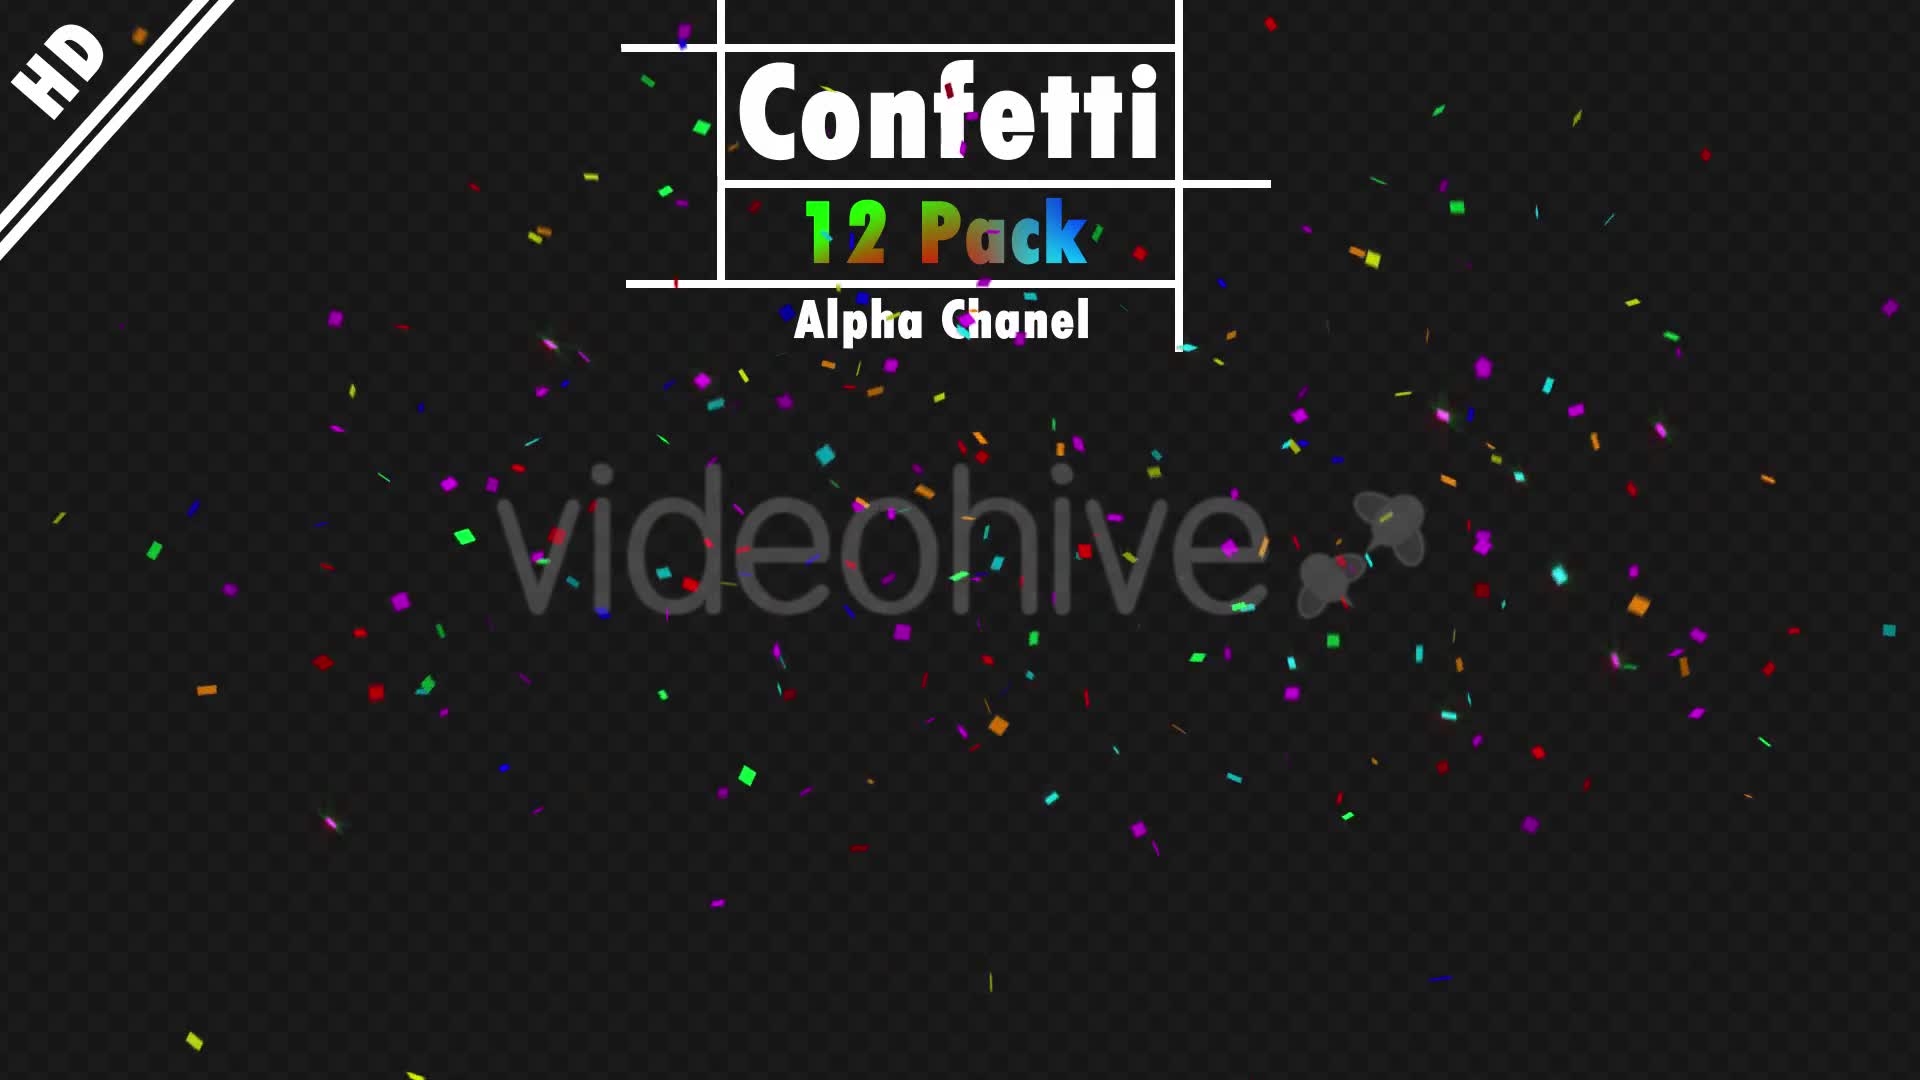 Confetti Videohive 20192923 Motion Graphics Image 2